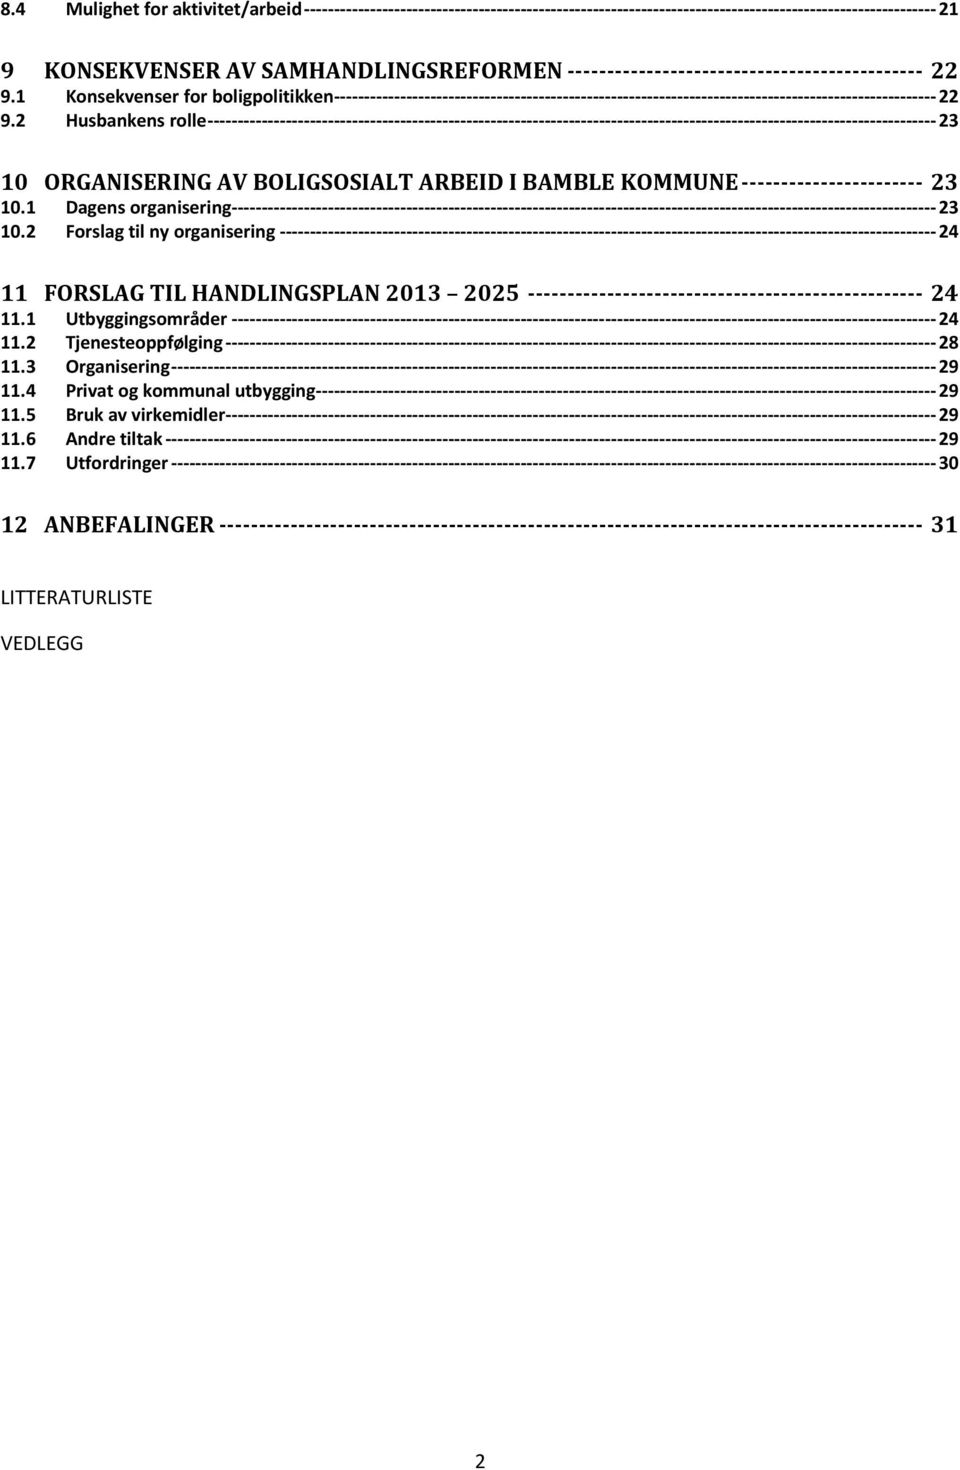 2 Forslag til ny organisering 24 11 FORSLAG TIL HANDLINGSPLAN 2013 2025 24 11.1 Utbyggingsområder 24 11.2 Tjenesteoppfølging 28 11.